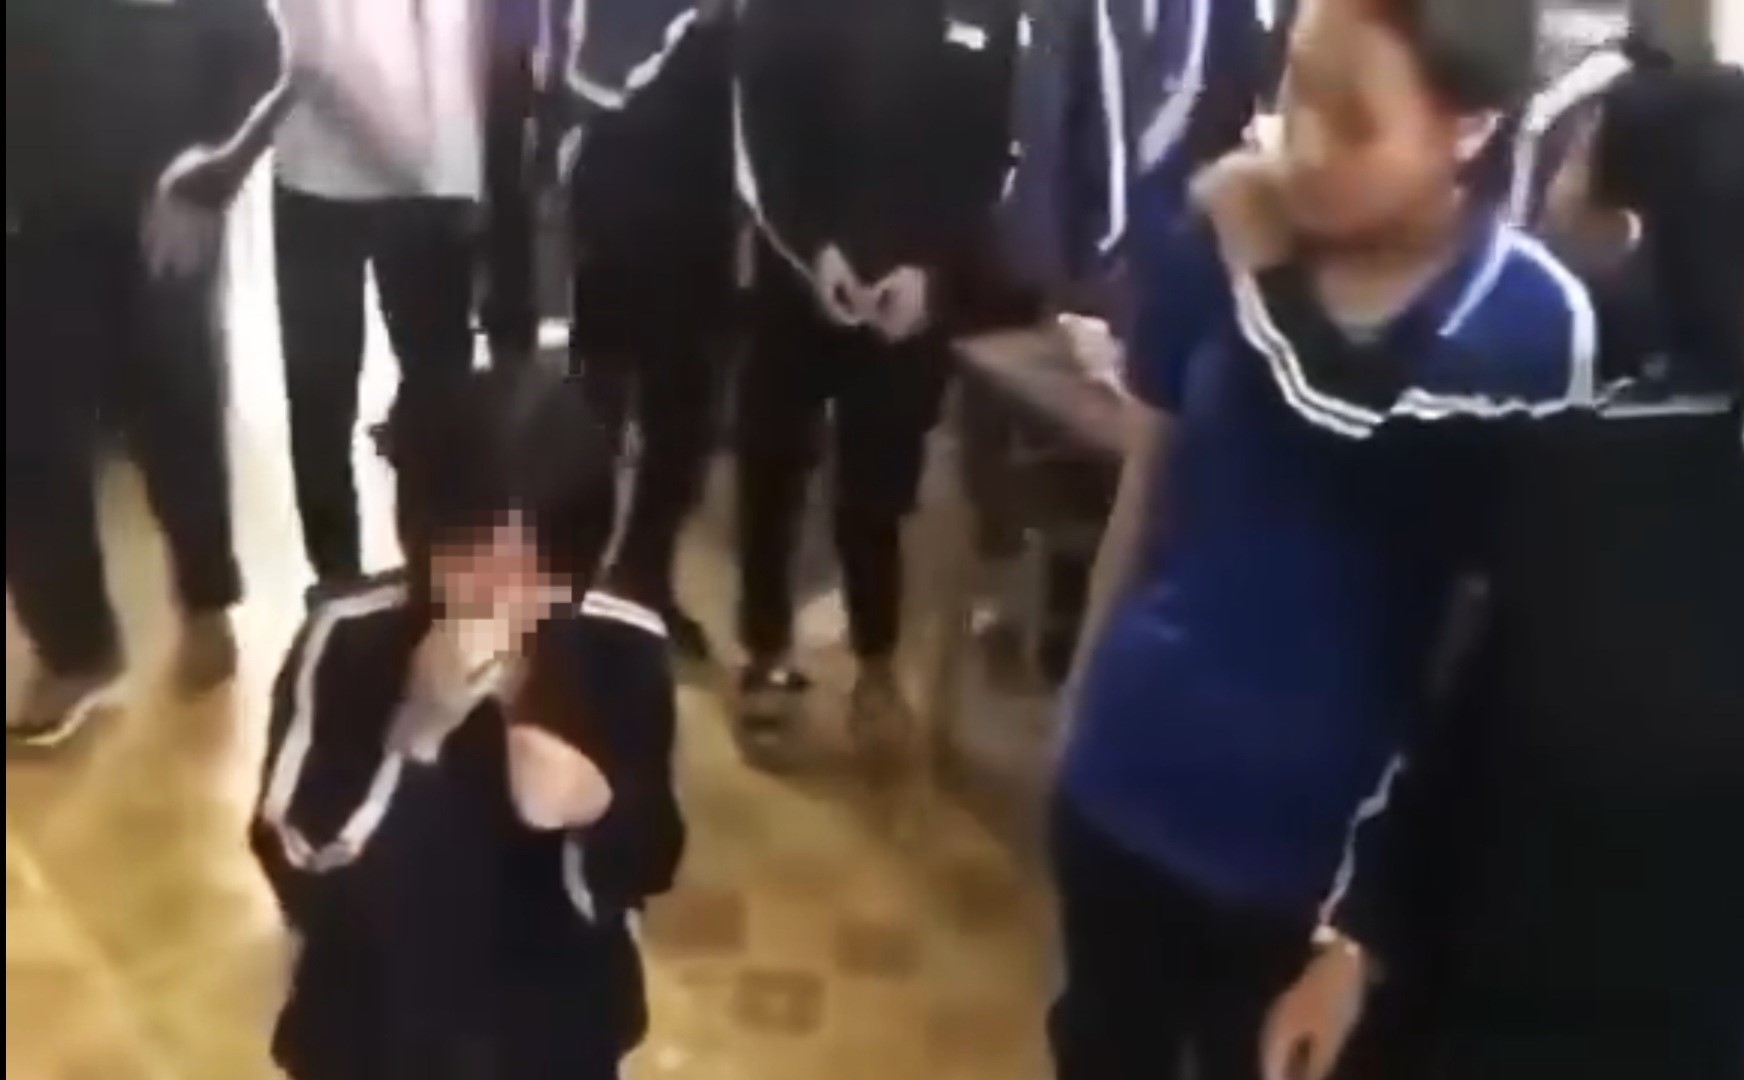 UBND tỉnh Lâm Đồng chỉ đạo khẩn trương làm rõ vụ việc nữ sinh bị đánh hội đồng trong lớp